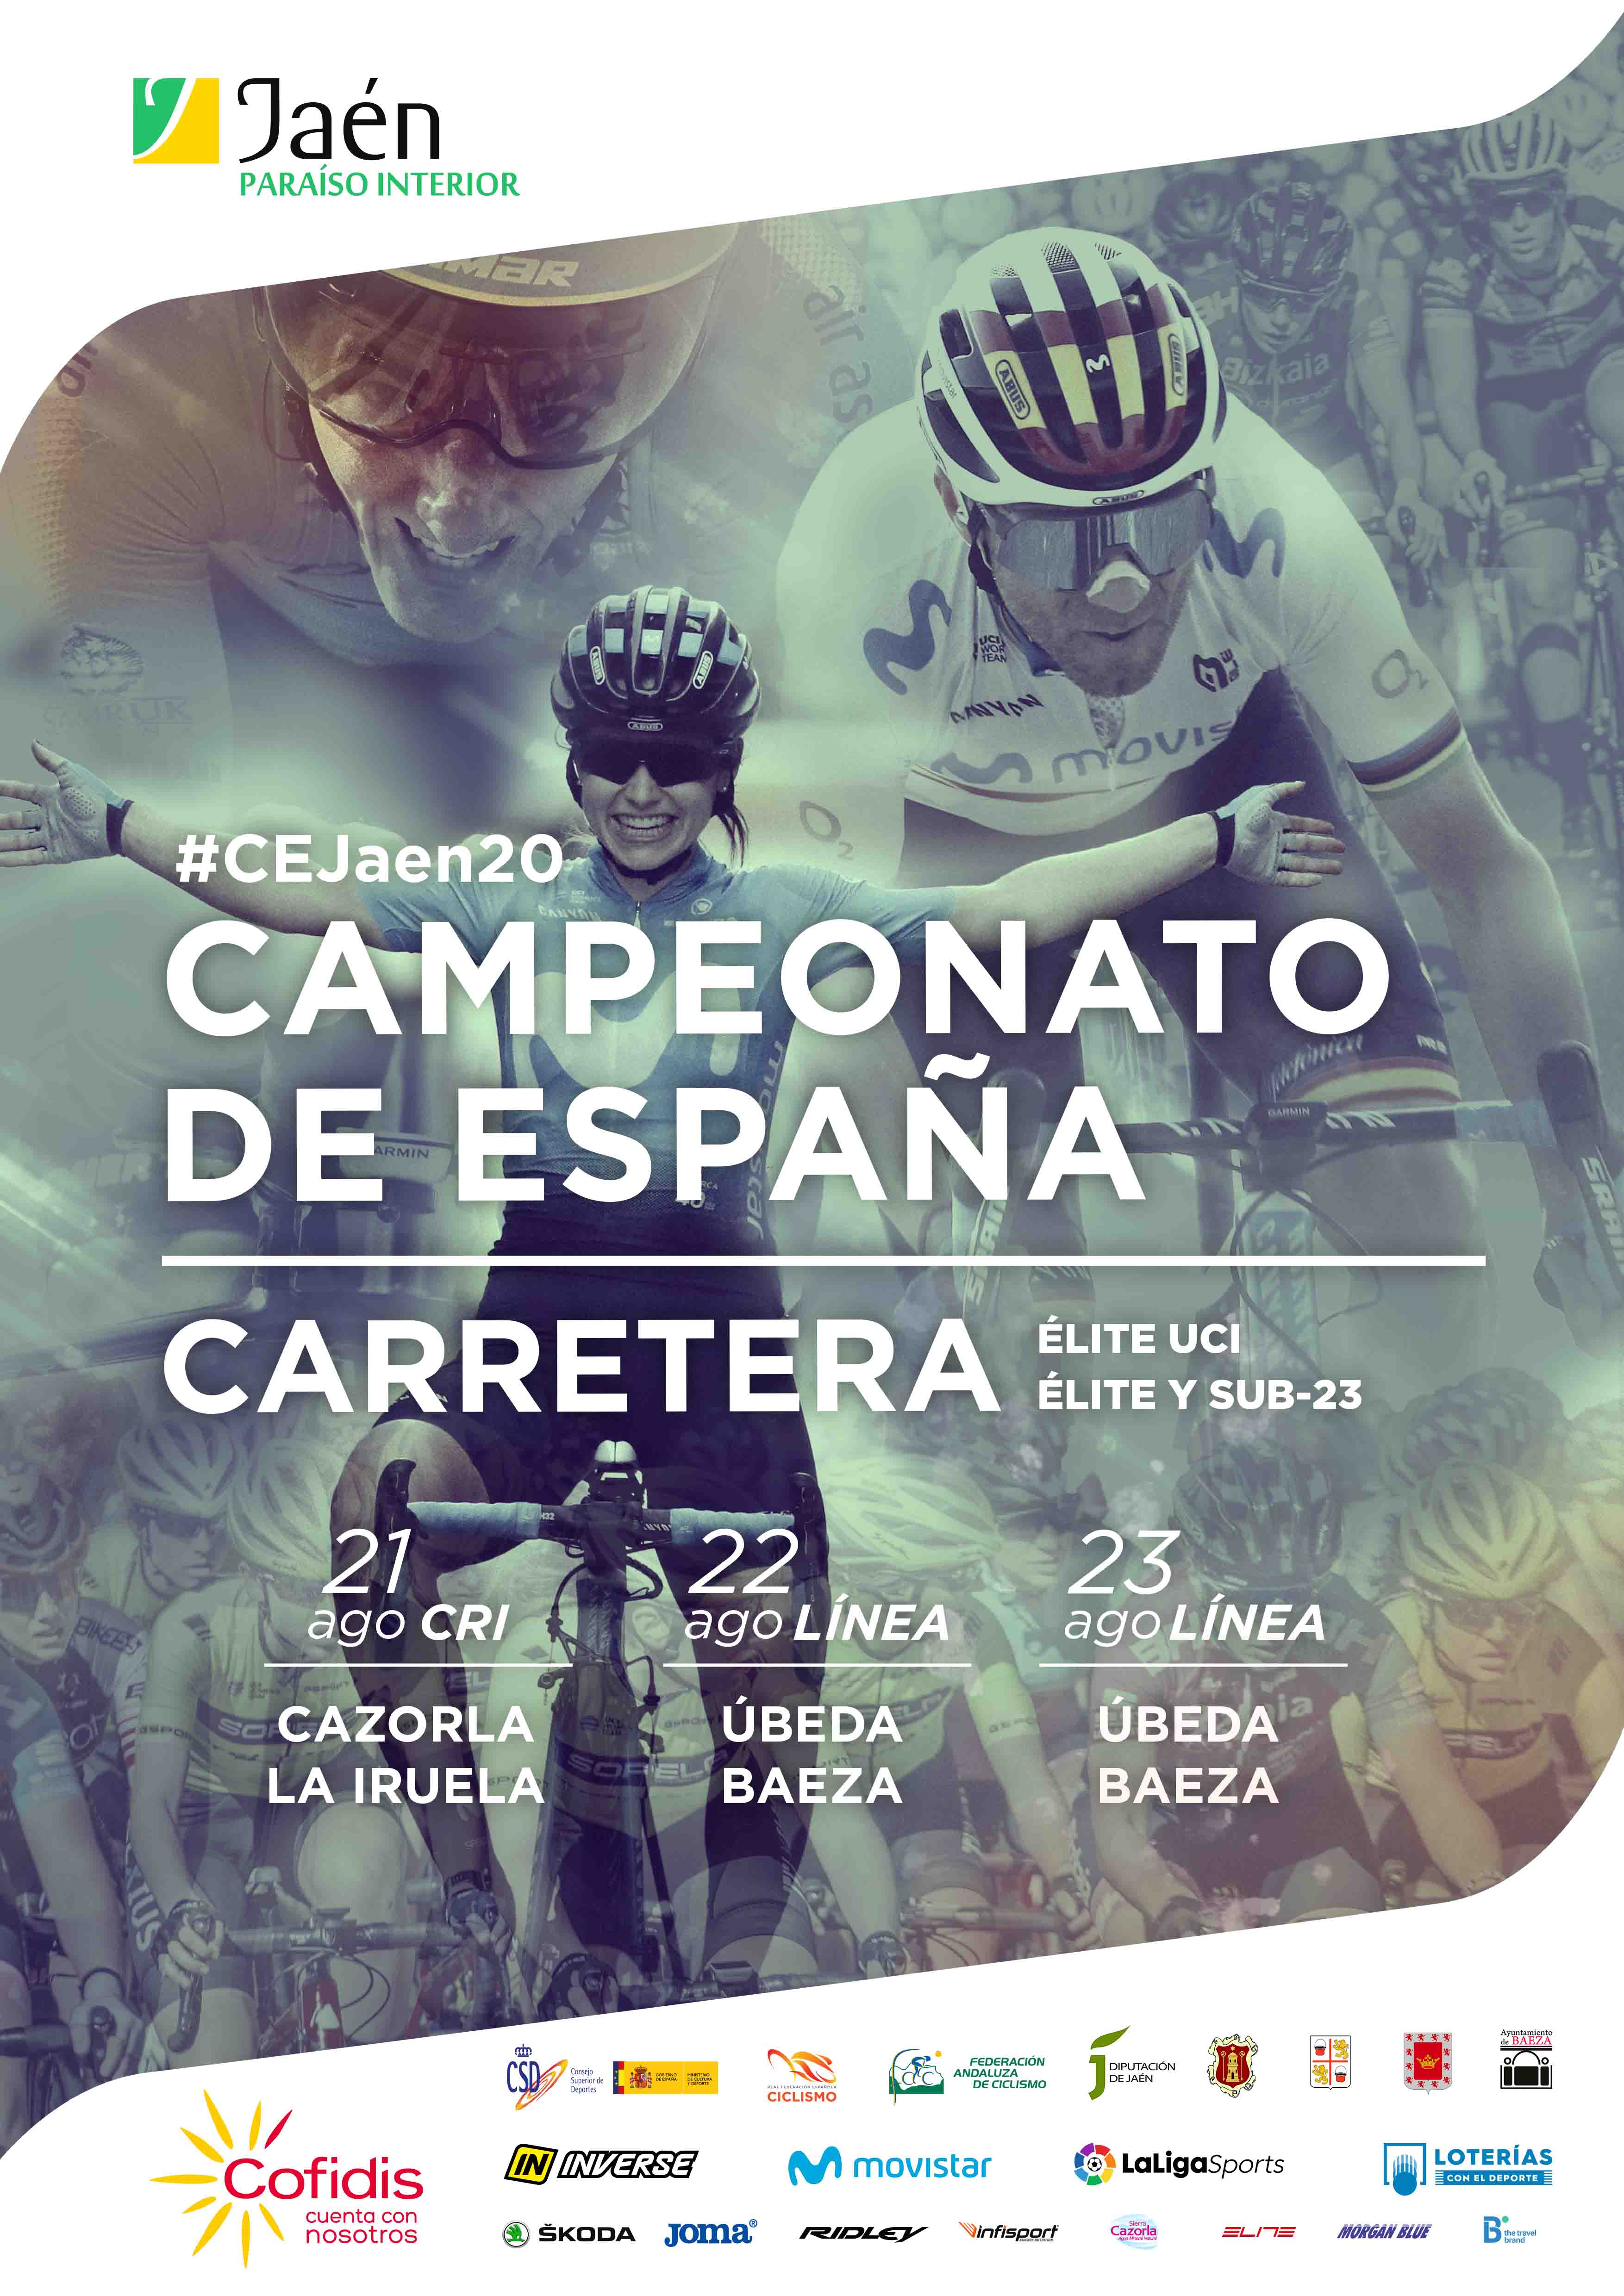 Presentadas las sedes y los recorridos del Campeonato de España de Carretera de Jaén 2020